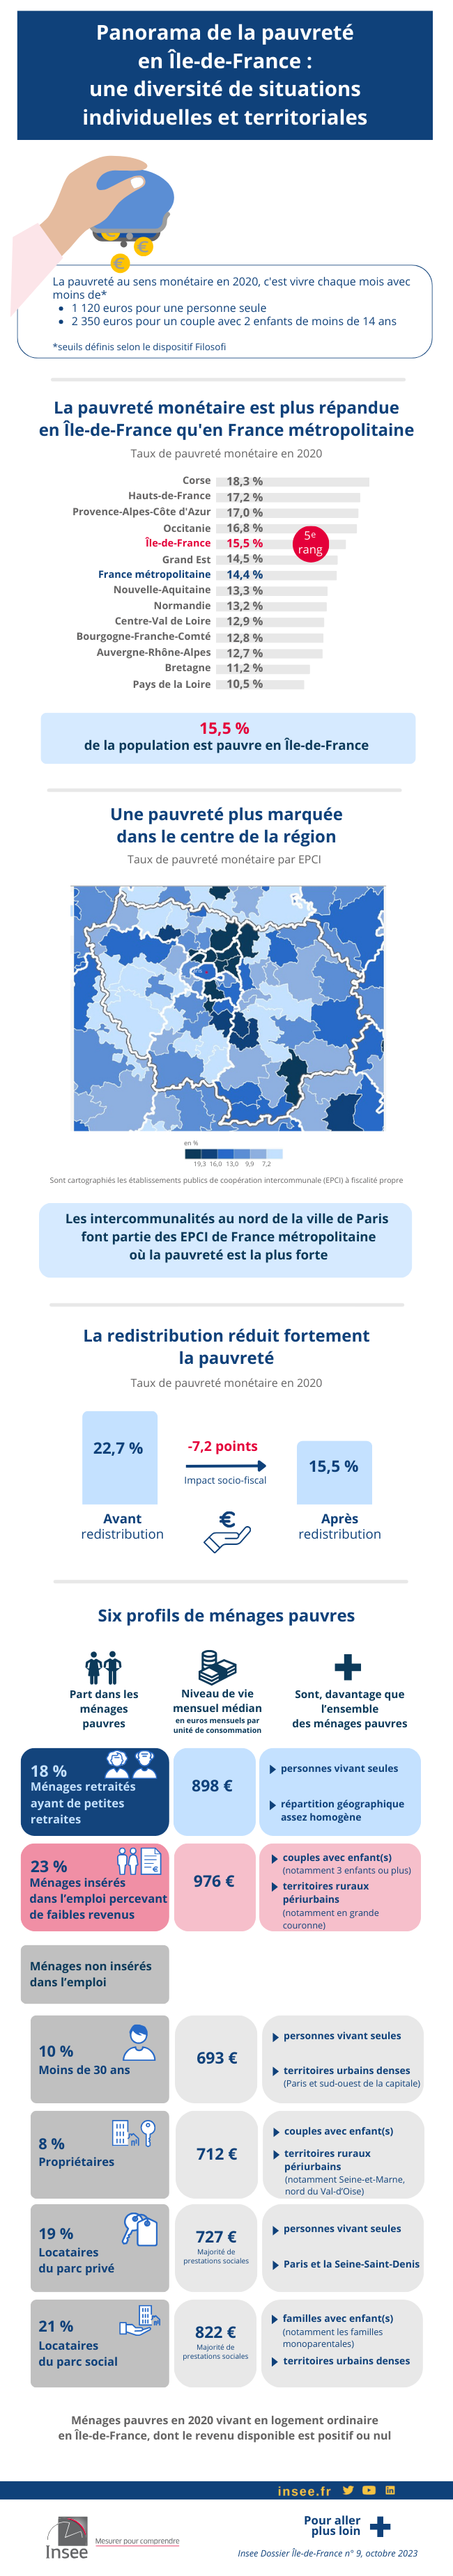 Panorama de la pauvreté en Île-de-France : une diversité de situations individuelles et territoriales.